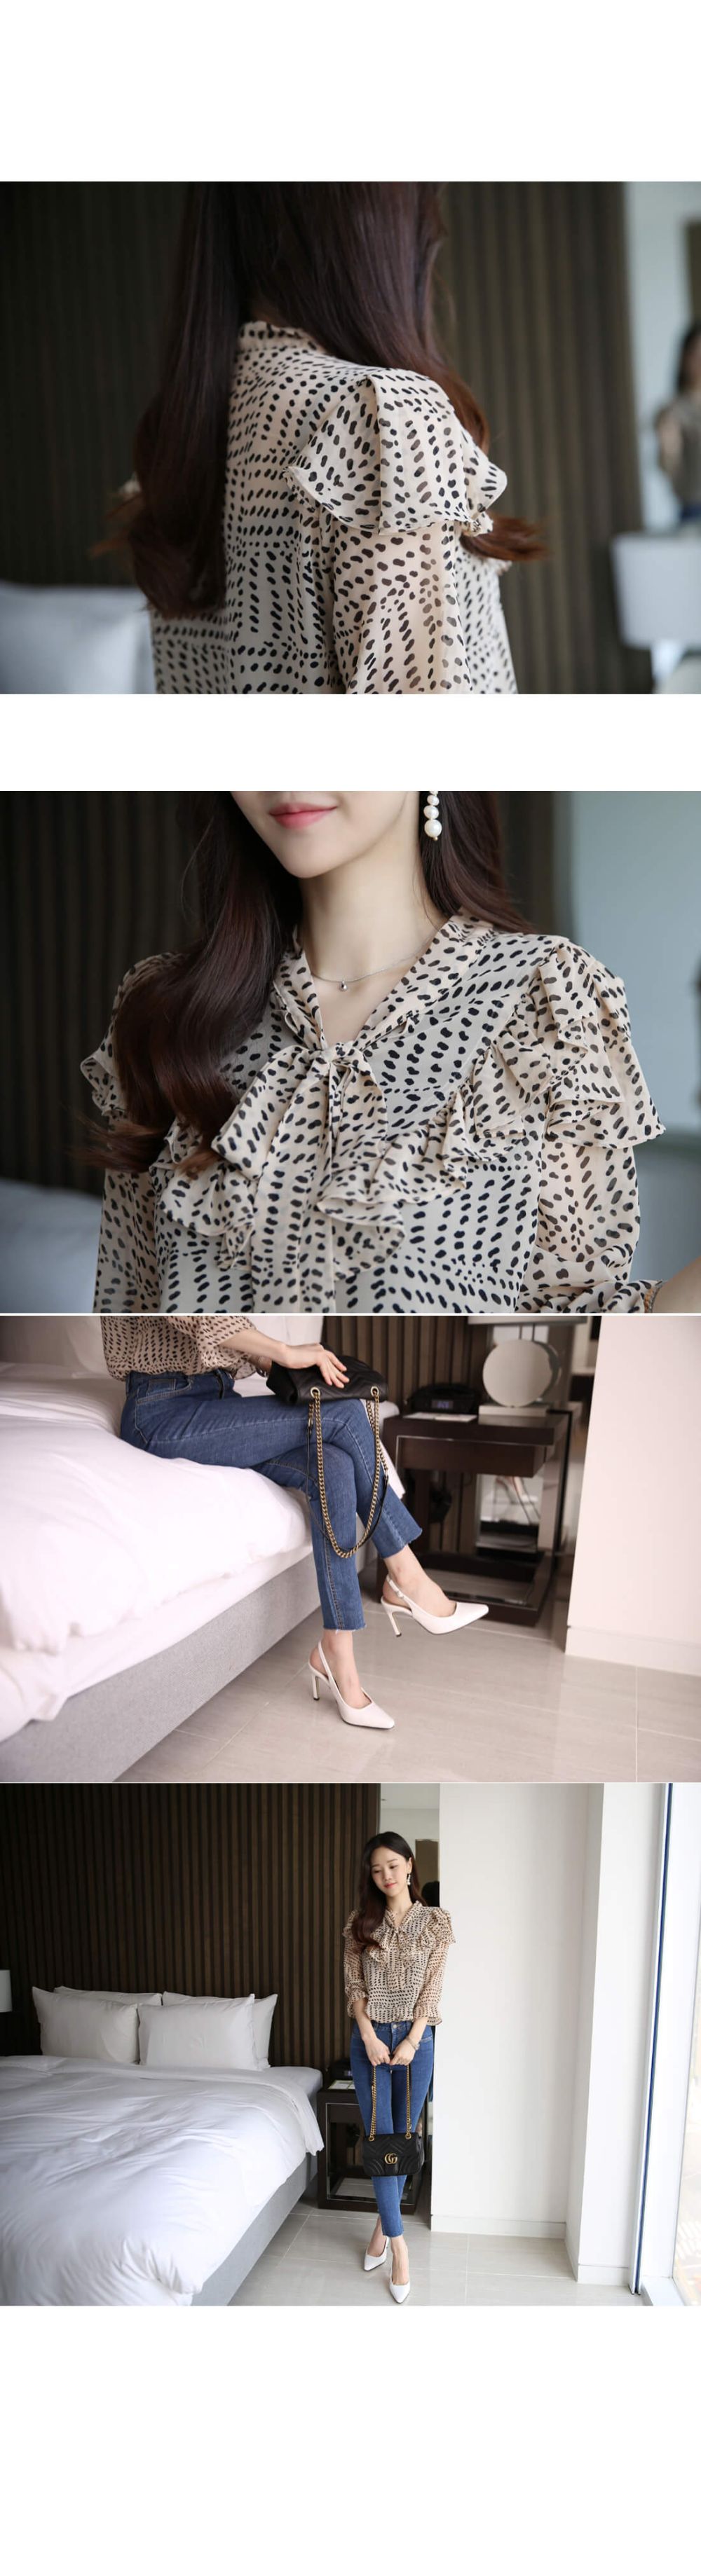 韓國平價服飾 激瘦-5kg 九分牛仔褲